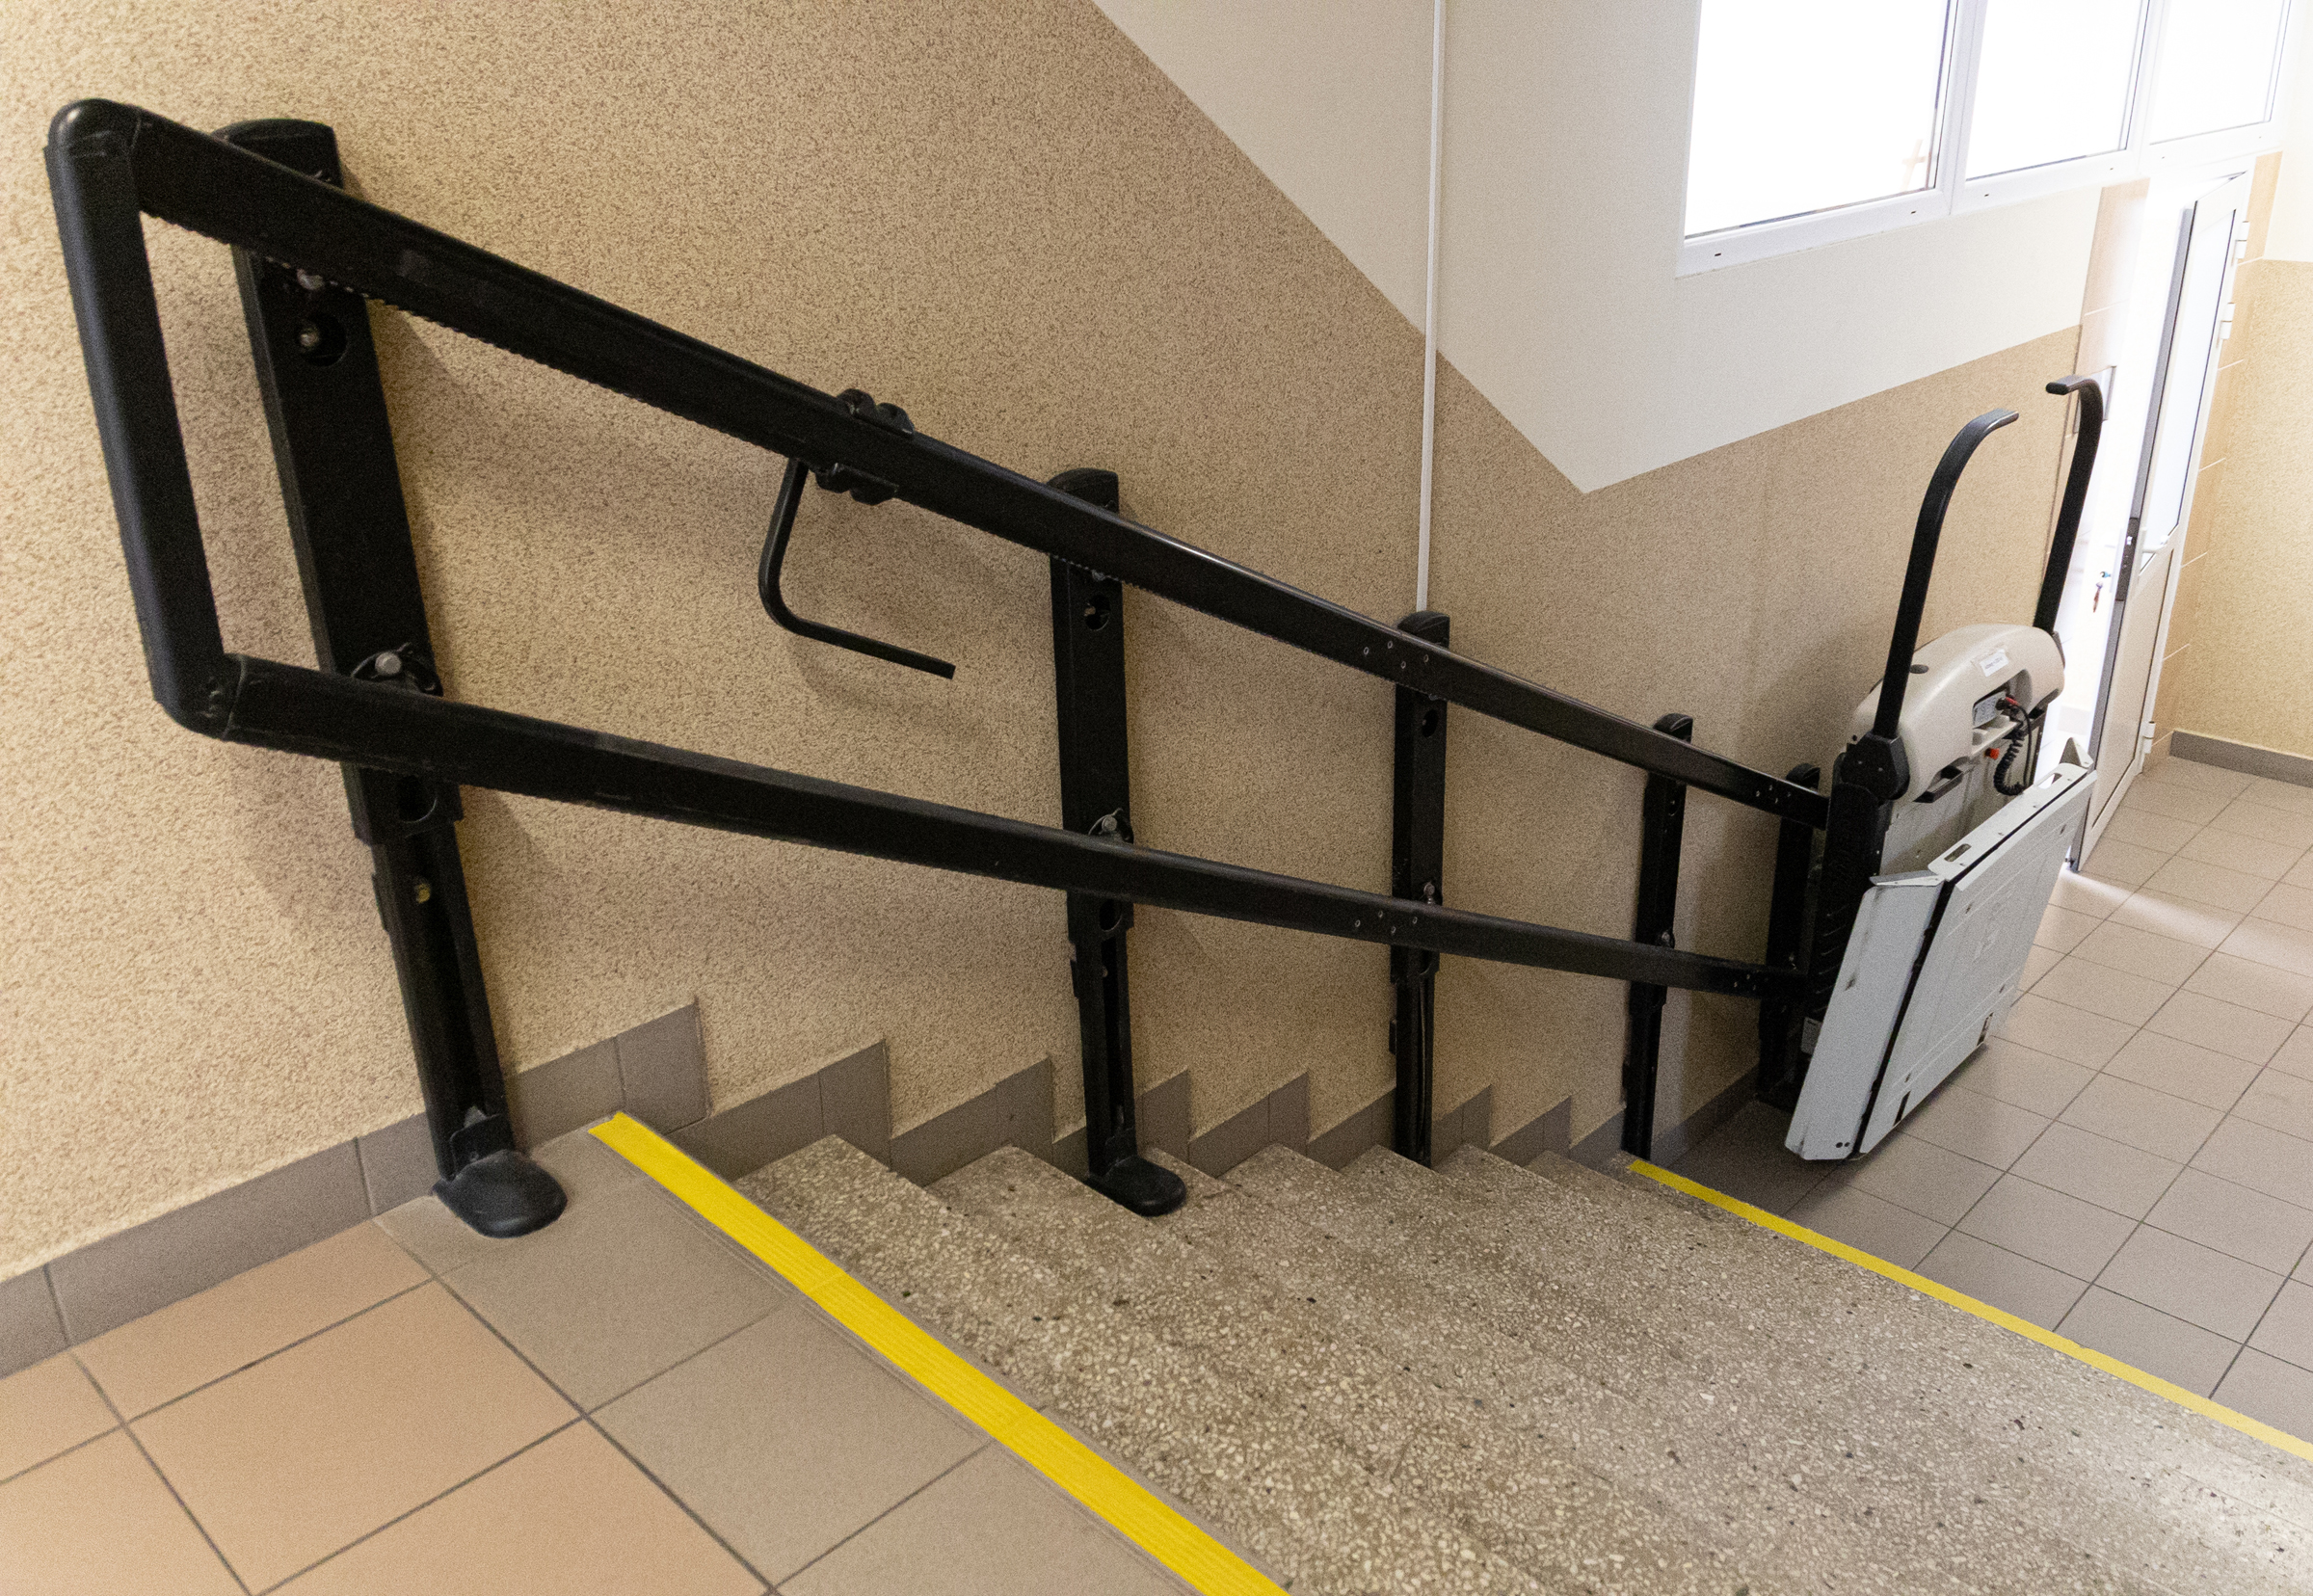 schody przy których zamontowano platformę dla osób z niepełnosprawnościami